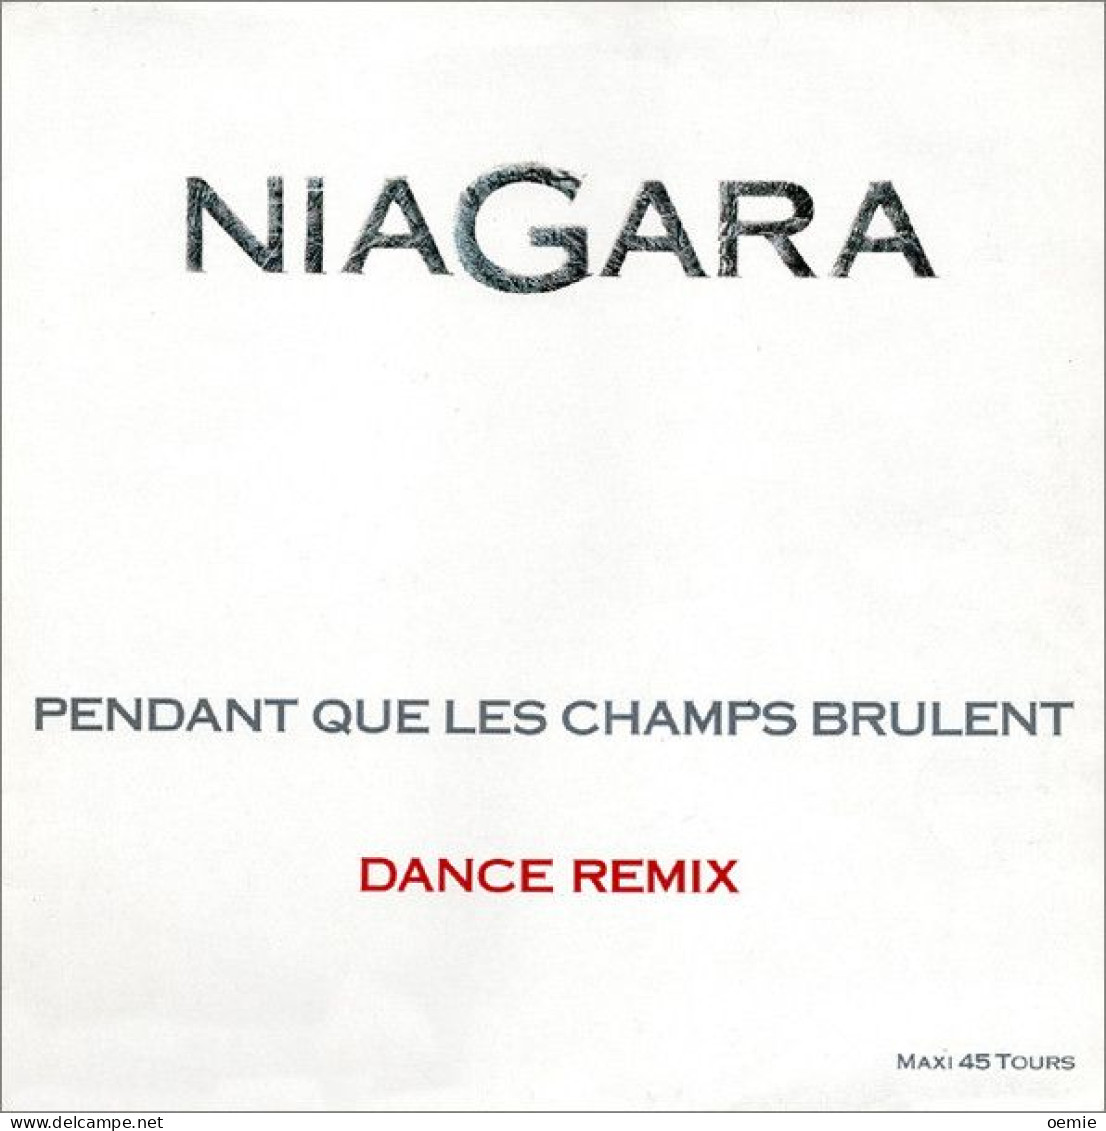 NIAGARA   PENDANT QUE LES CHAMPS BRULENT - 45 Toeren - Maxi-Single